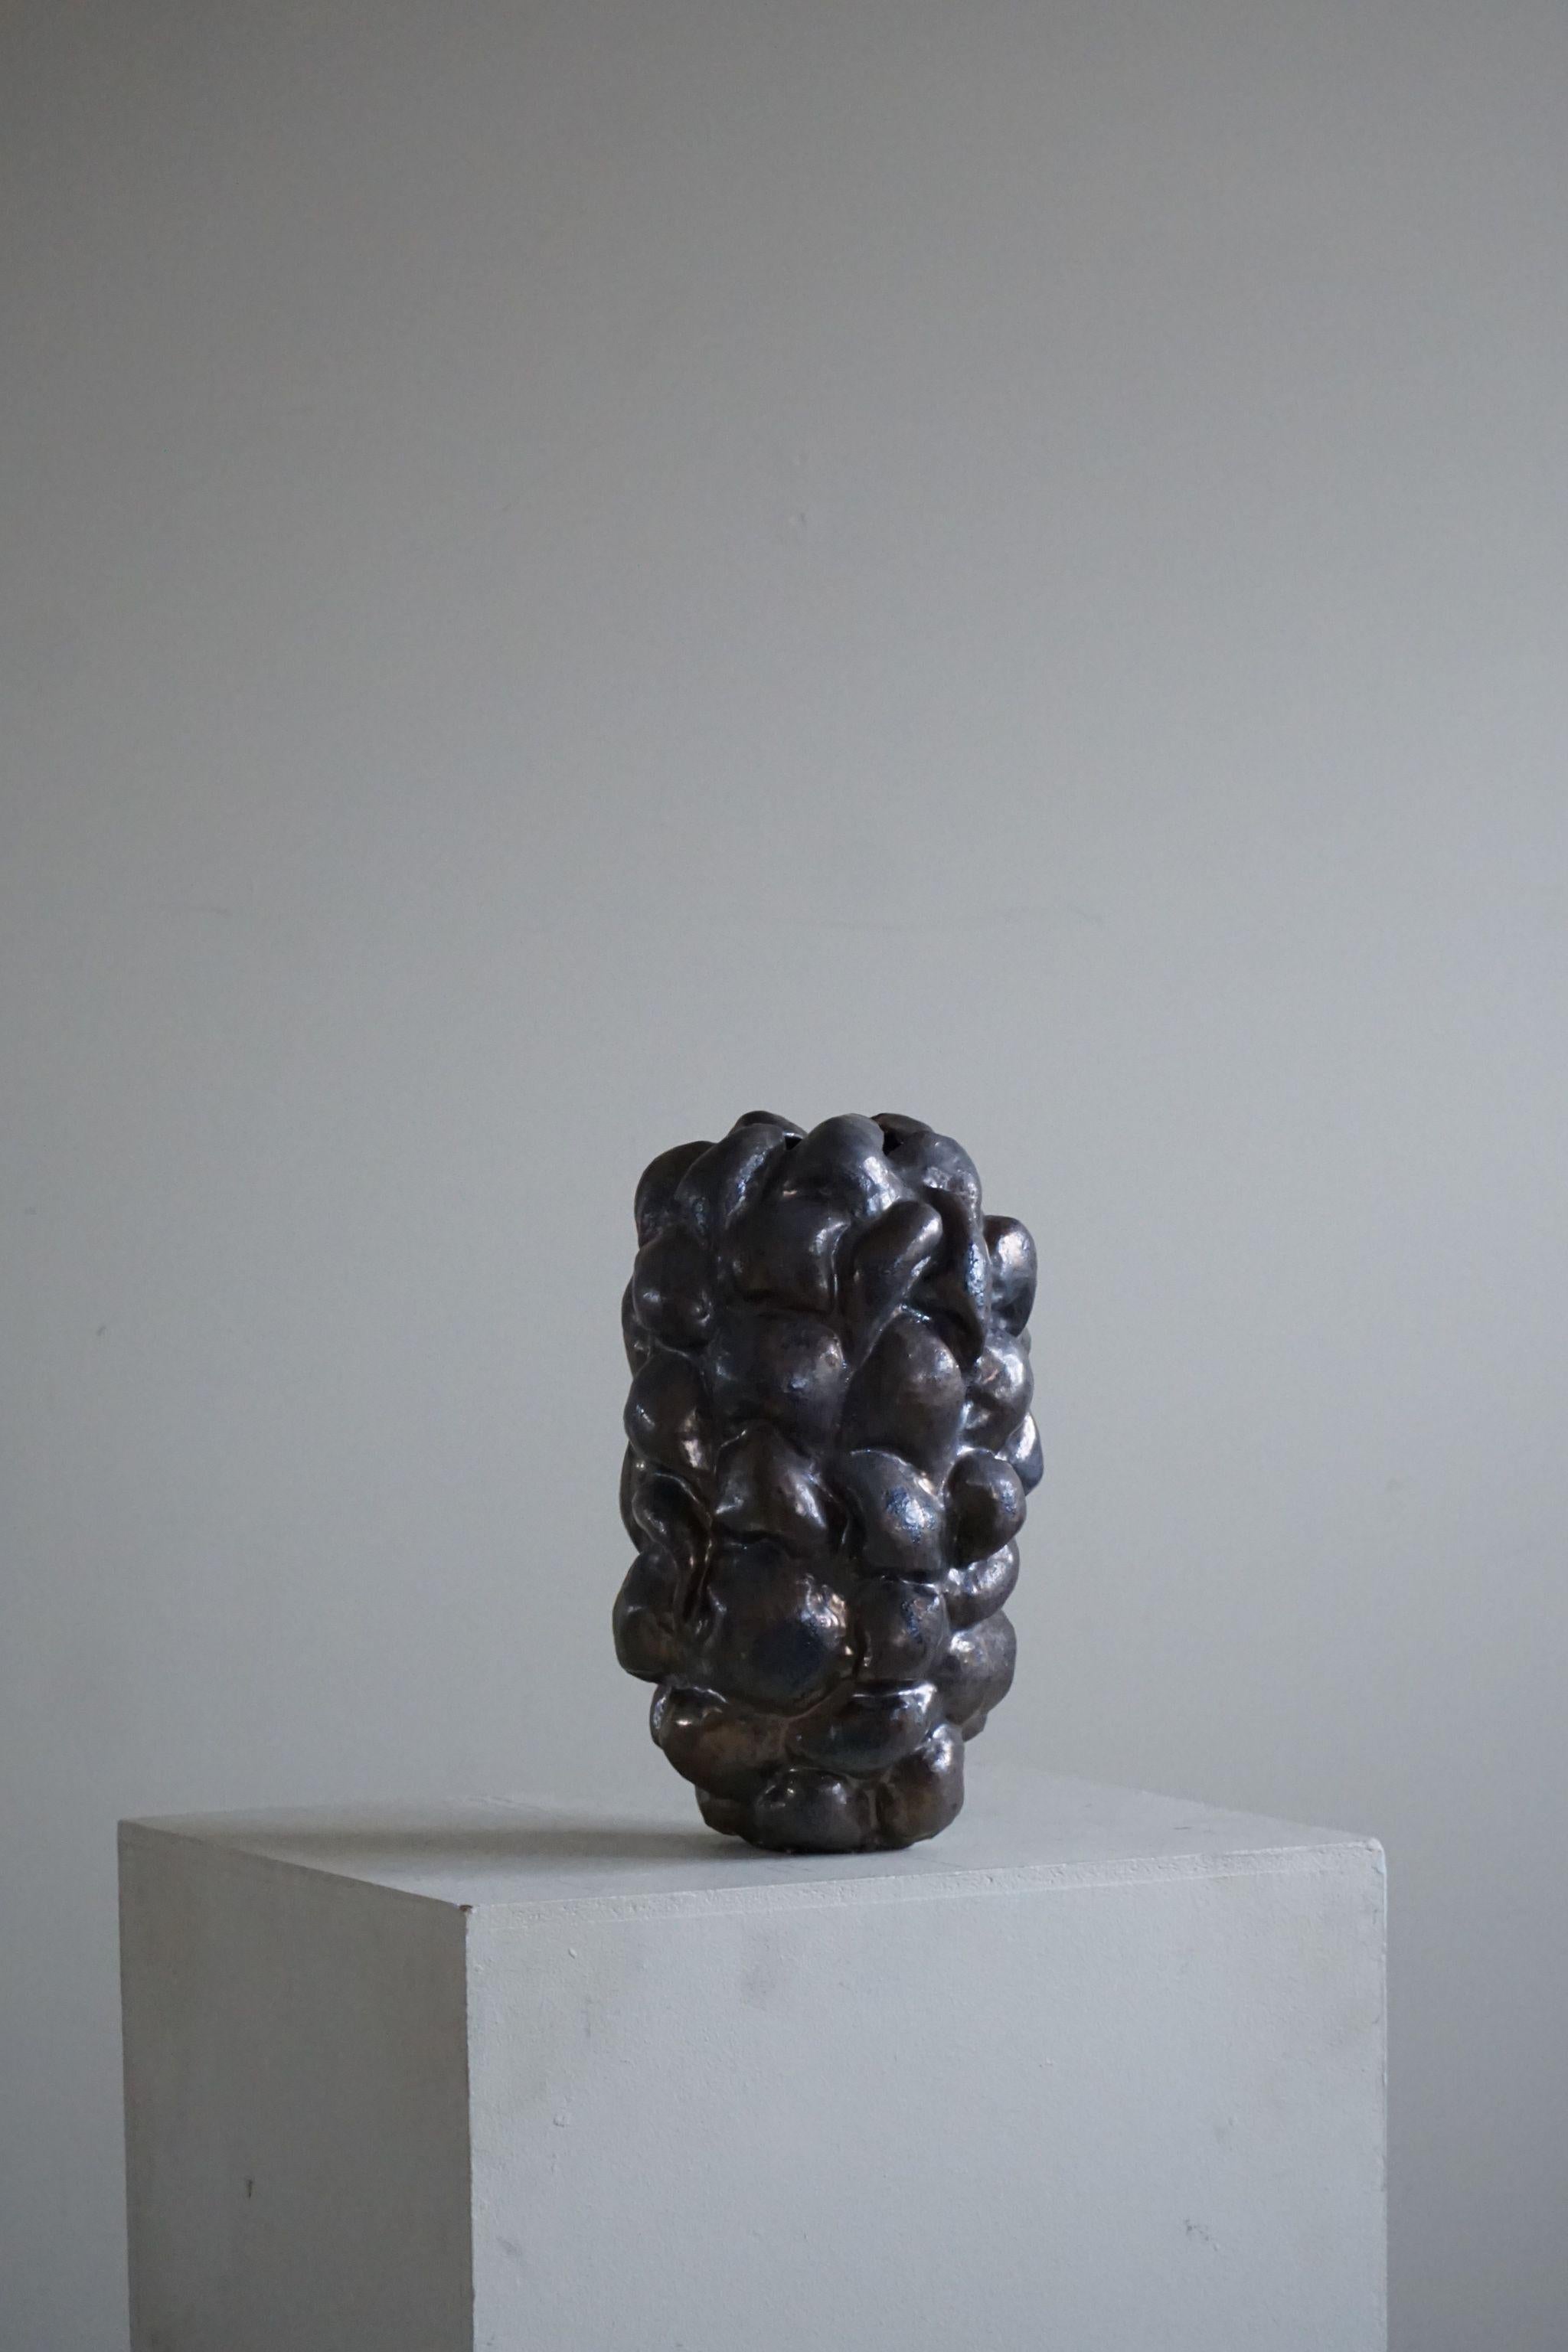 Grand vase en céramique à glaçure bronze, réalisé par l'artiste danois Ole Victor, 2021.

Ole Victor est un artiste danois qui a fréquenté l'Académie des arts entre 1975 et 1980. Depuis, il crée des œuvres d'art et des céramiques. Il a été exposé